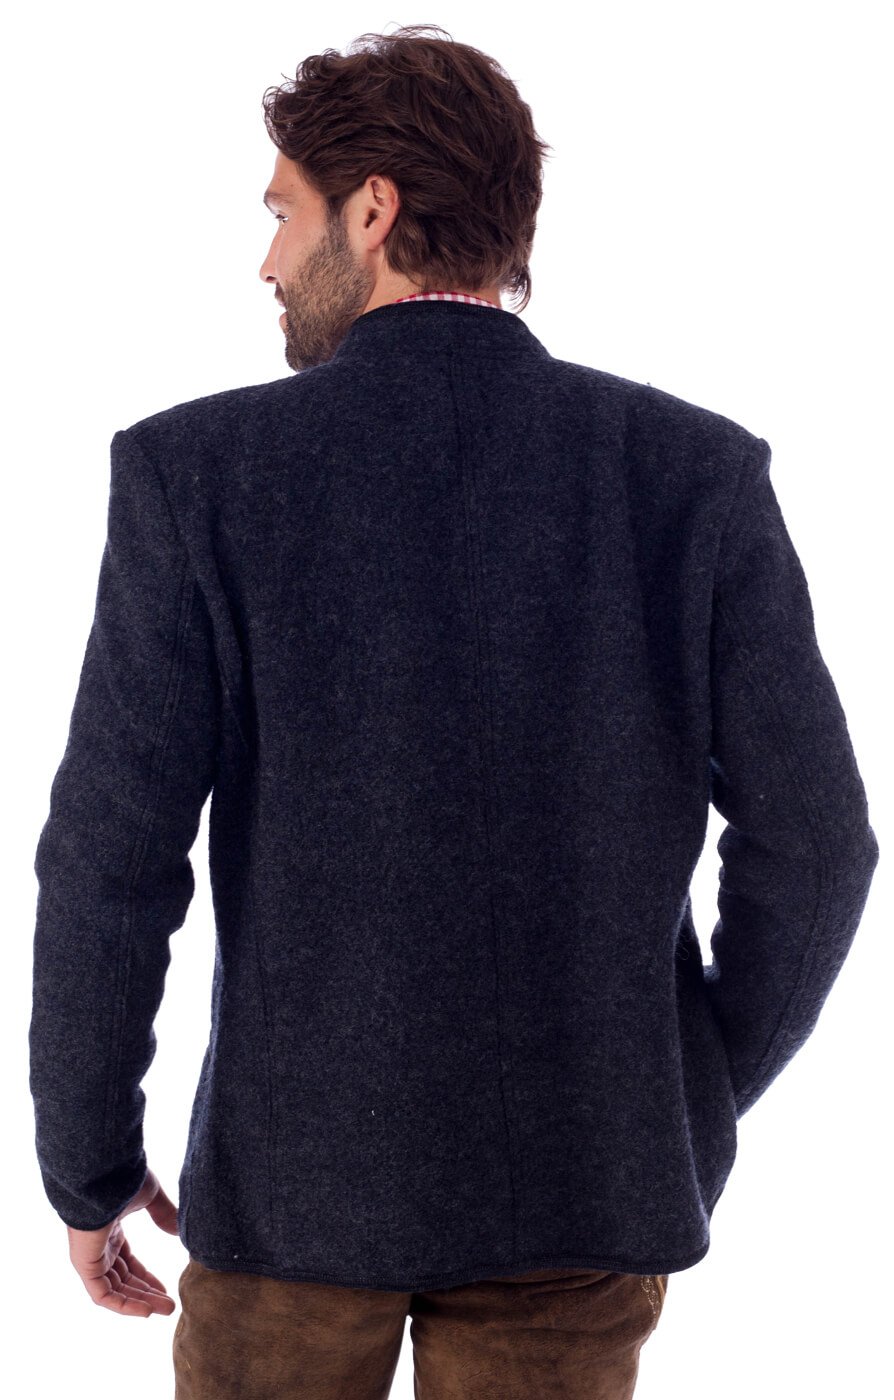 weitere Bilder von traditional jacket outdoor Birgel WJ grey black